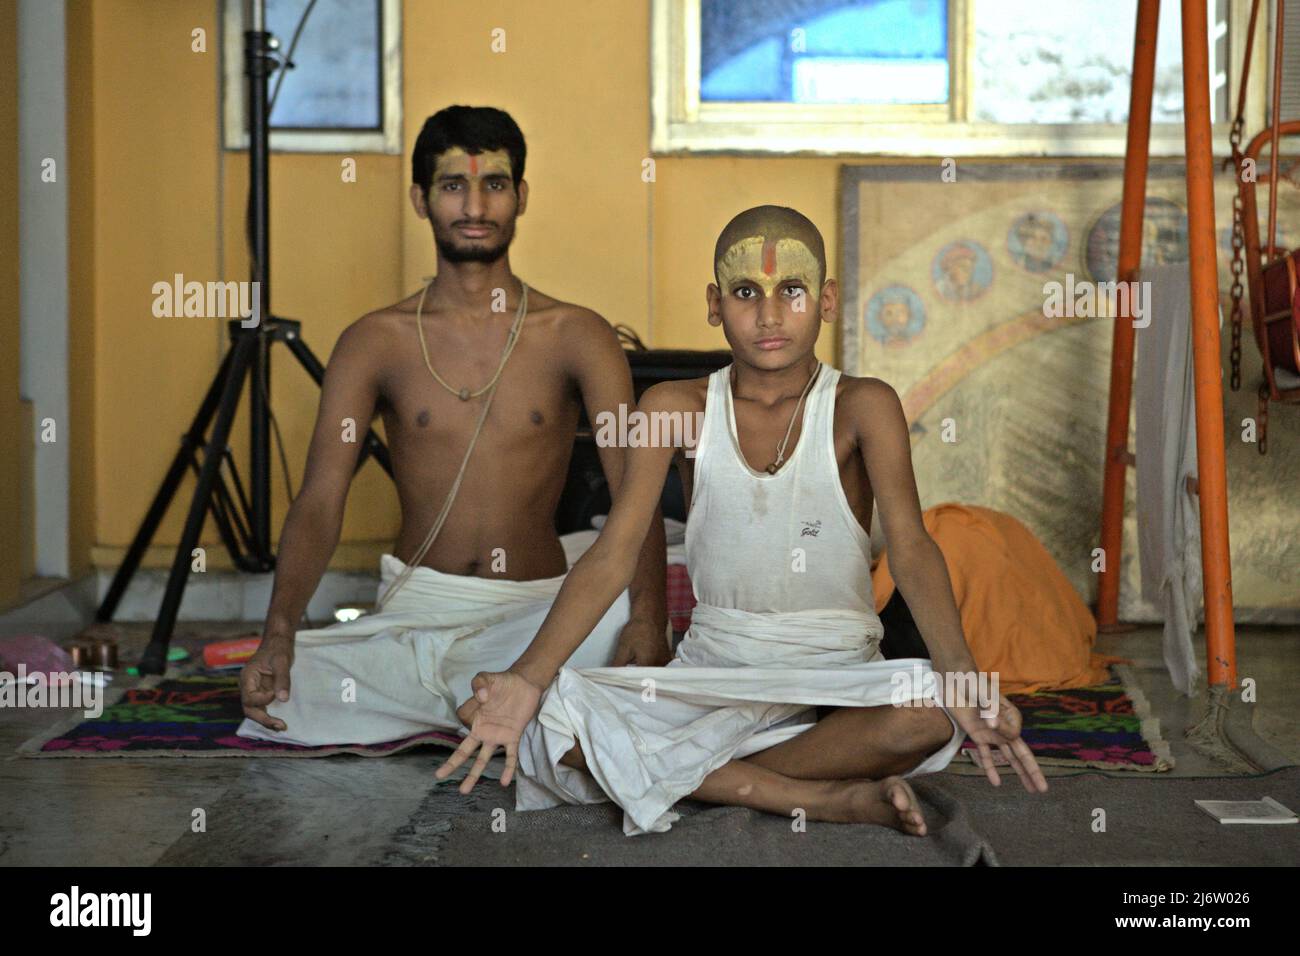 Porträt vedischer Studenten, die eine Yoga-Position im Ashram Shri Satuwa Baba in Varanasi, Uttar Pradesh, Indien, demonstrieren. Stockfoto